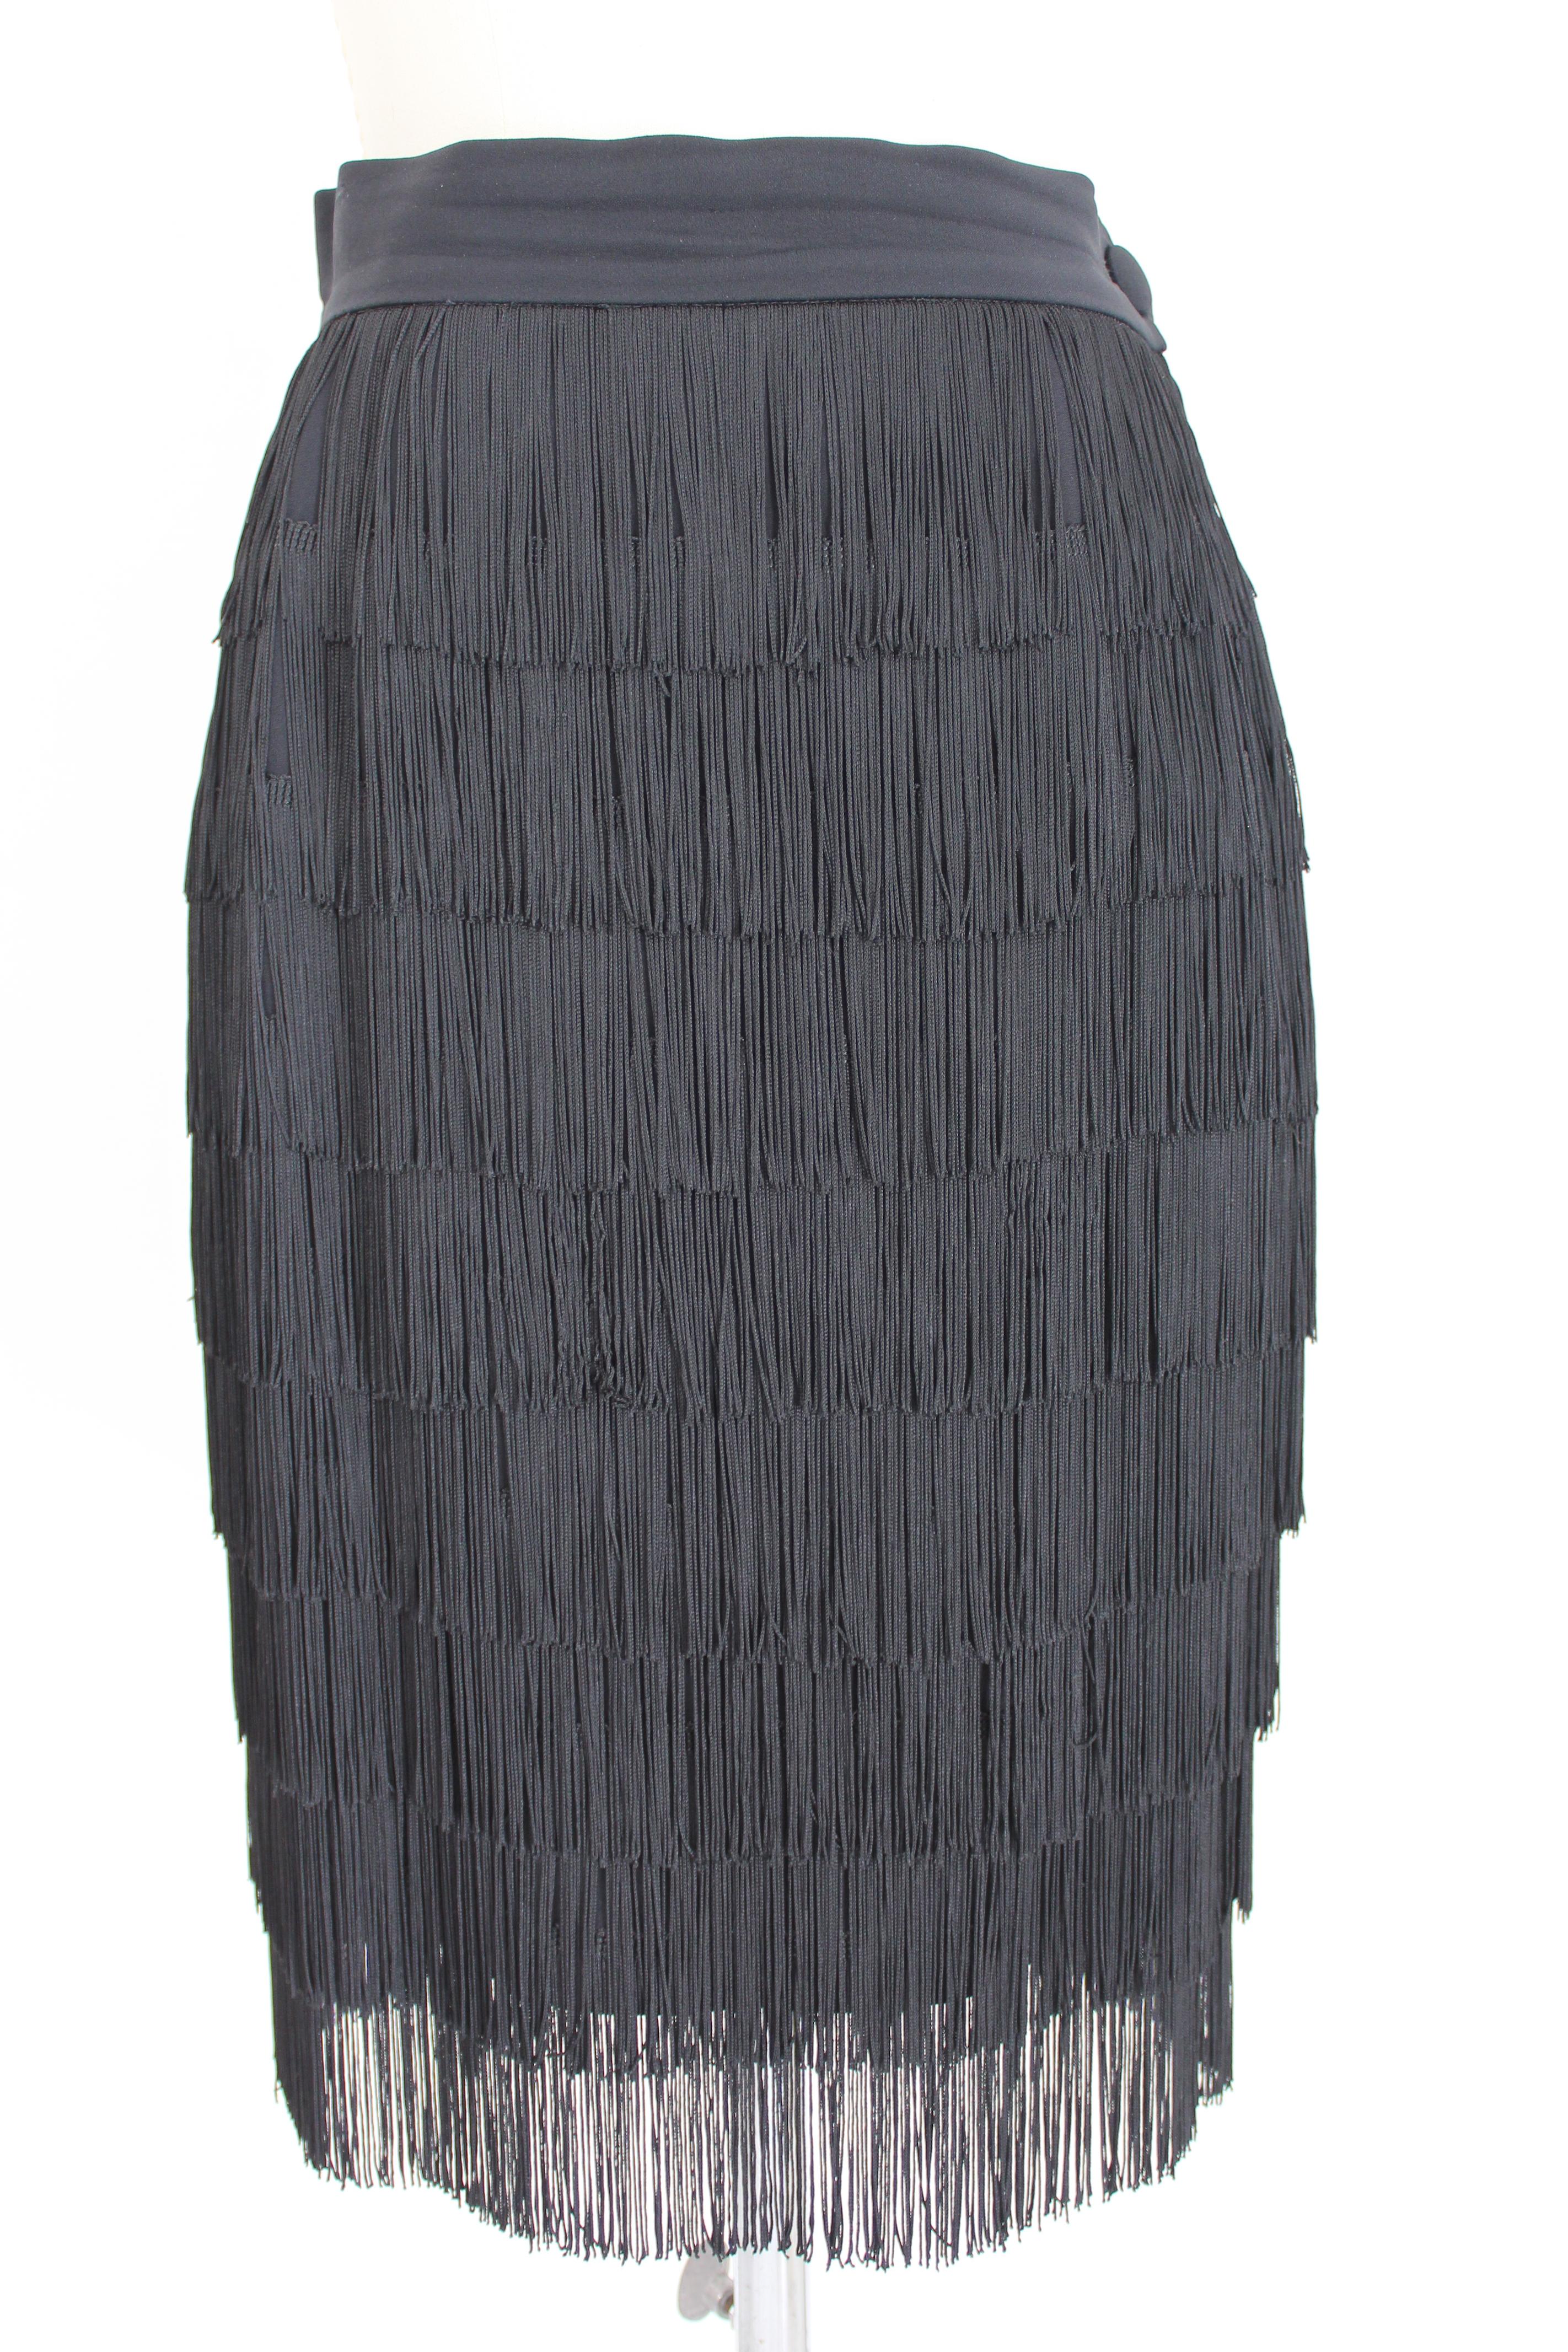 Women's Moschino Black Fringed Charleston Evening Skirt Suit Dress 1990s